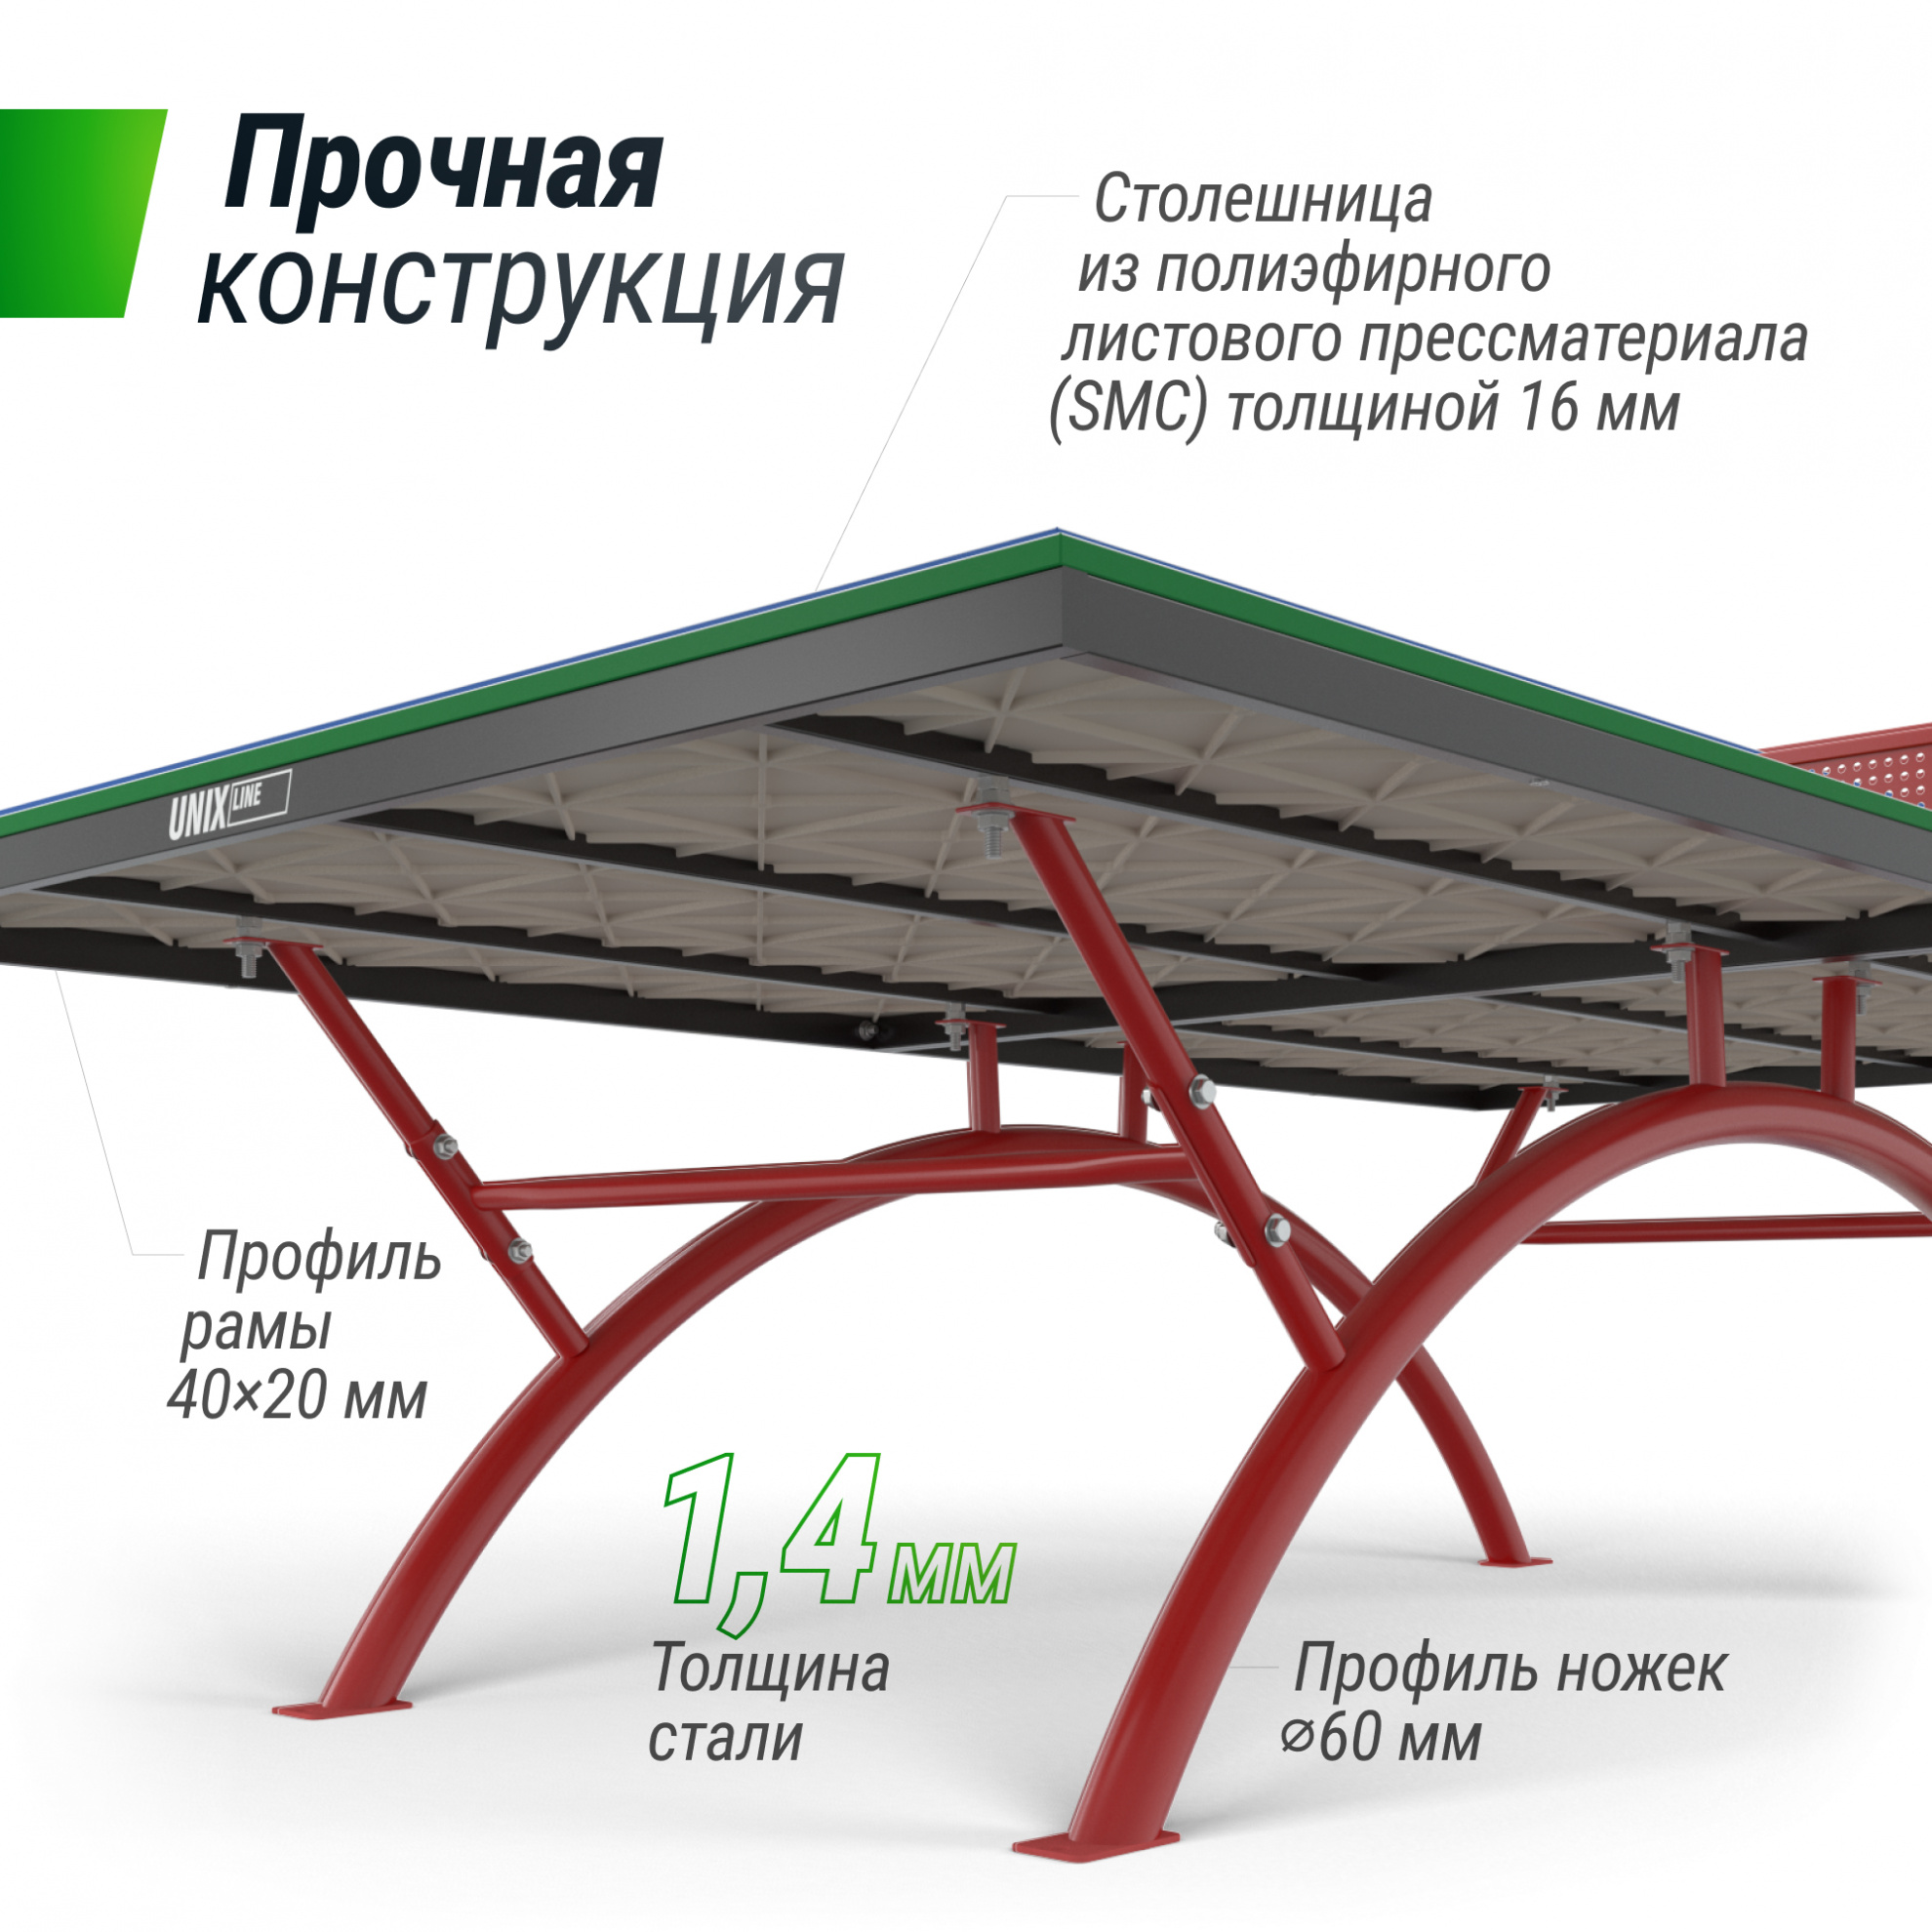 Теннисный стол антивандальный Unix Line 14 mm SMC (green)